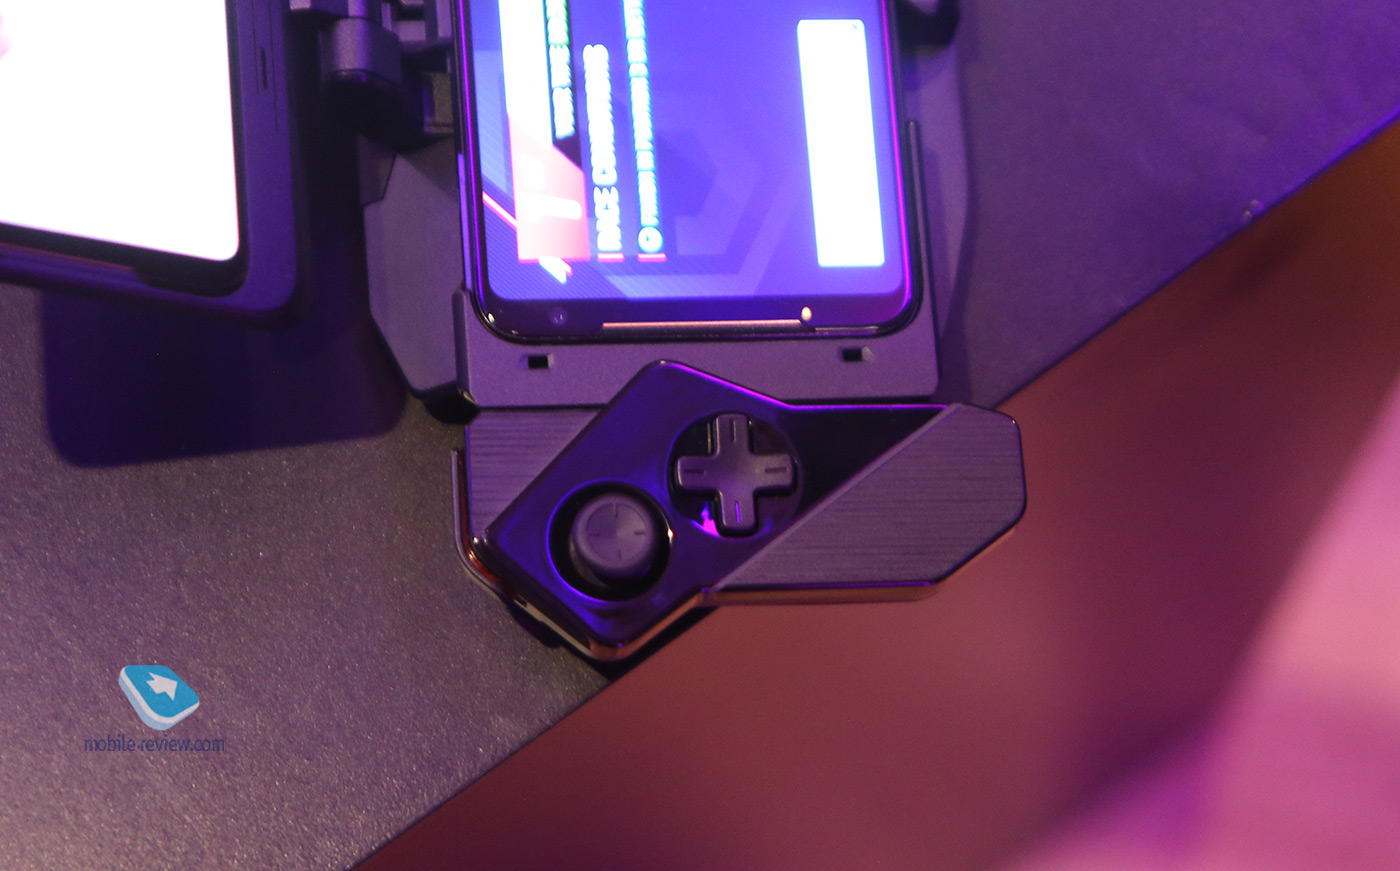 Первый взгляд на смартфон для геймеров – Asus ROG Phone II